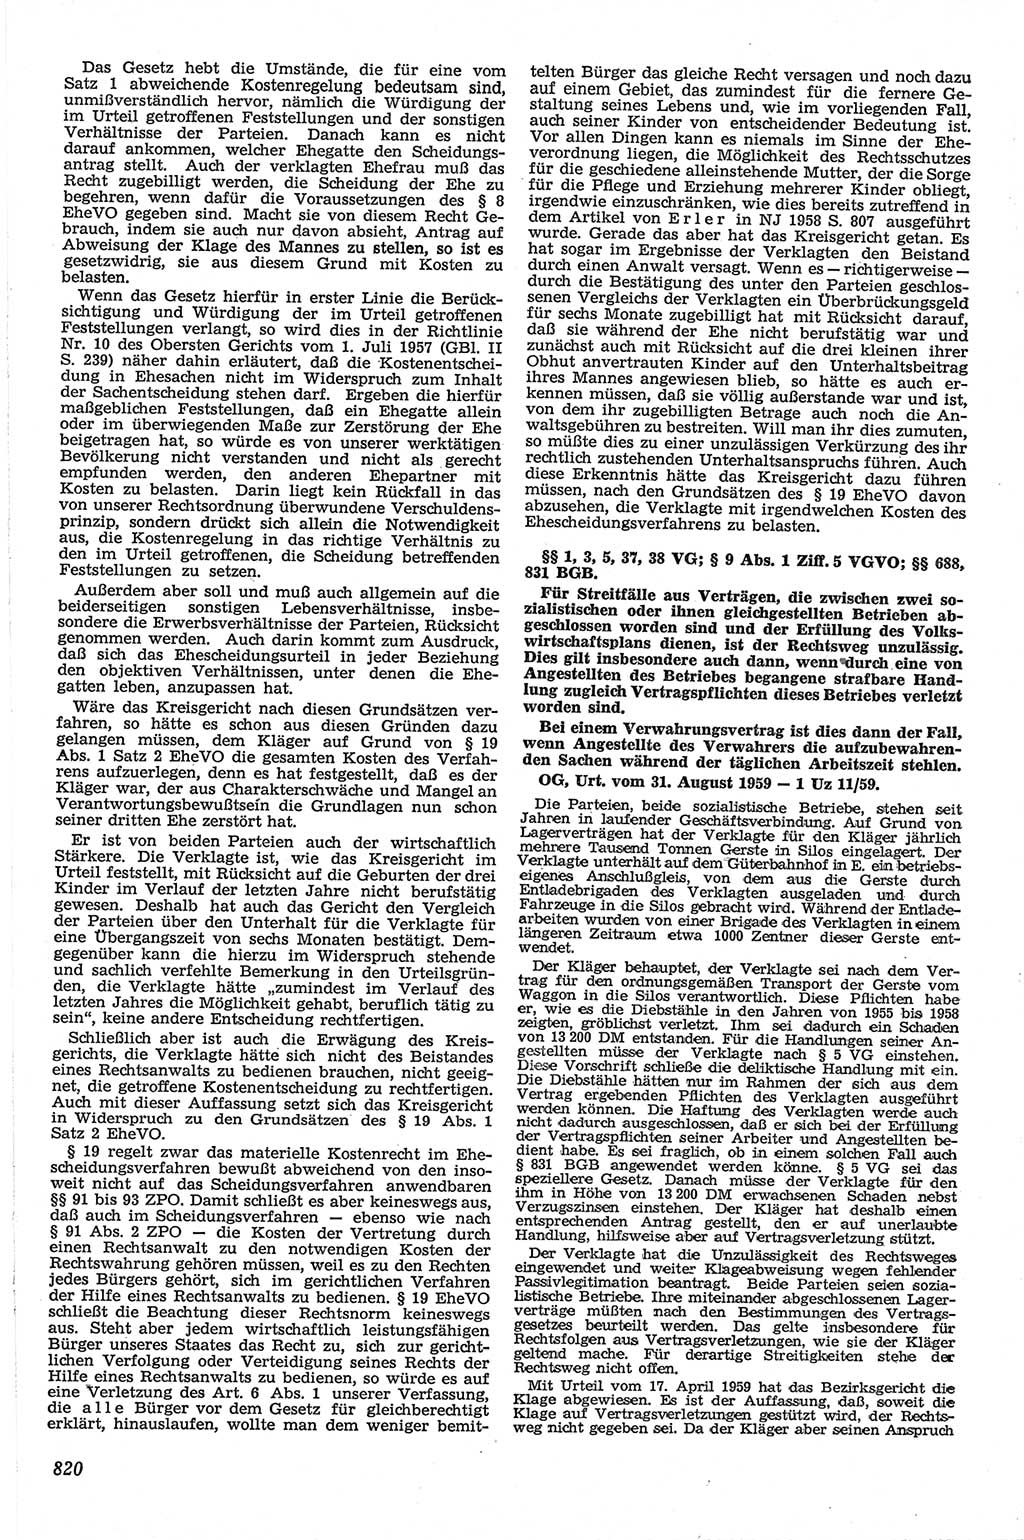 Neue Justiz (NJ), Zeitschrift für Recht und Rechtswissenschaft [Deutsche Demokratische Republik (DDR)], 13. Jahrgang 1959, Seite 820 (NJ DDR 1959, S. 820)